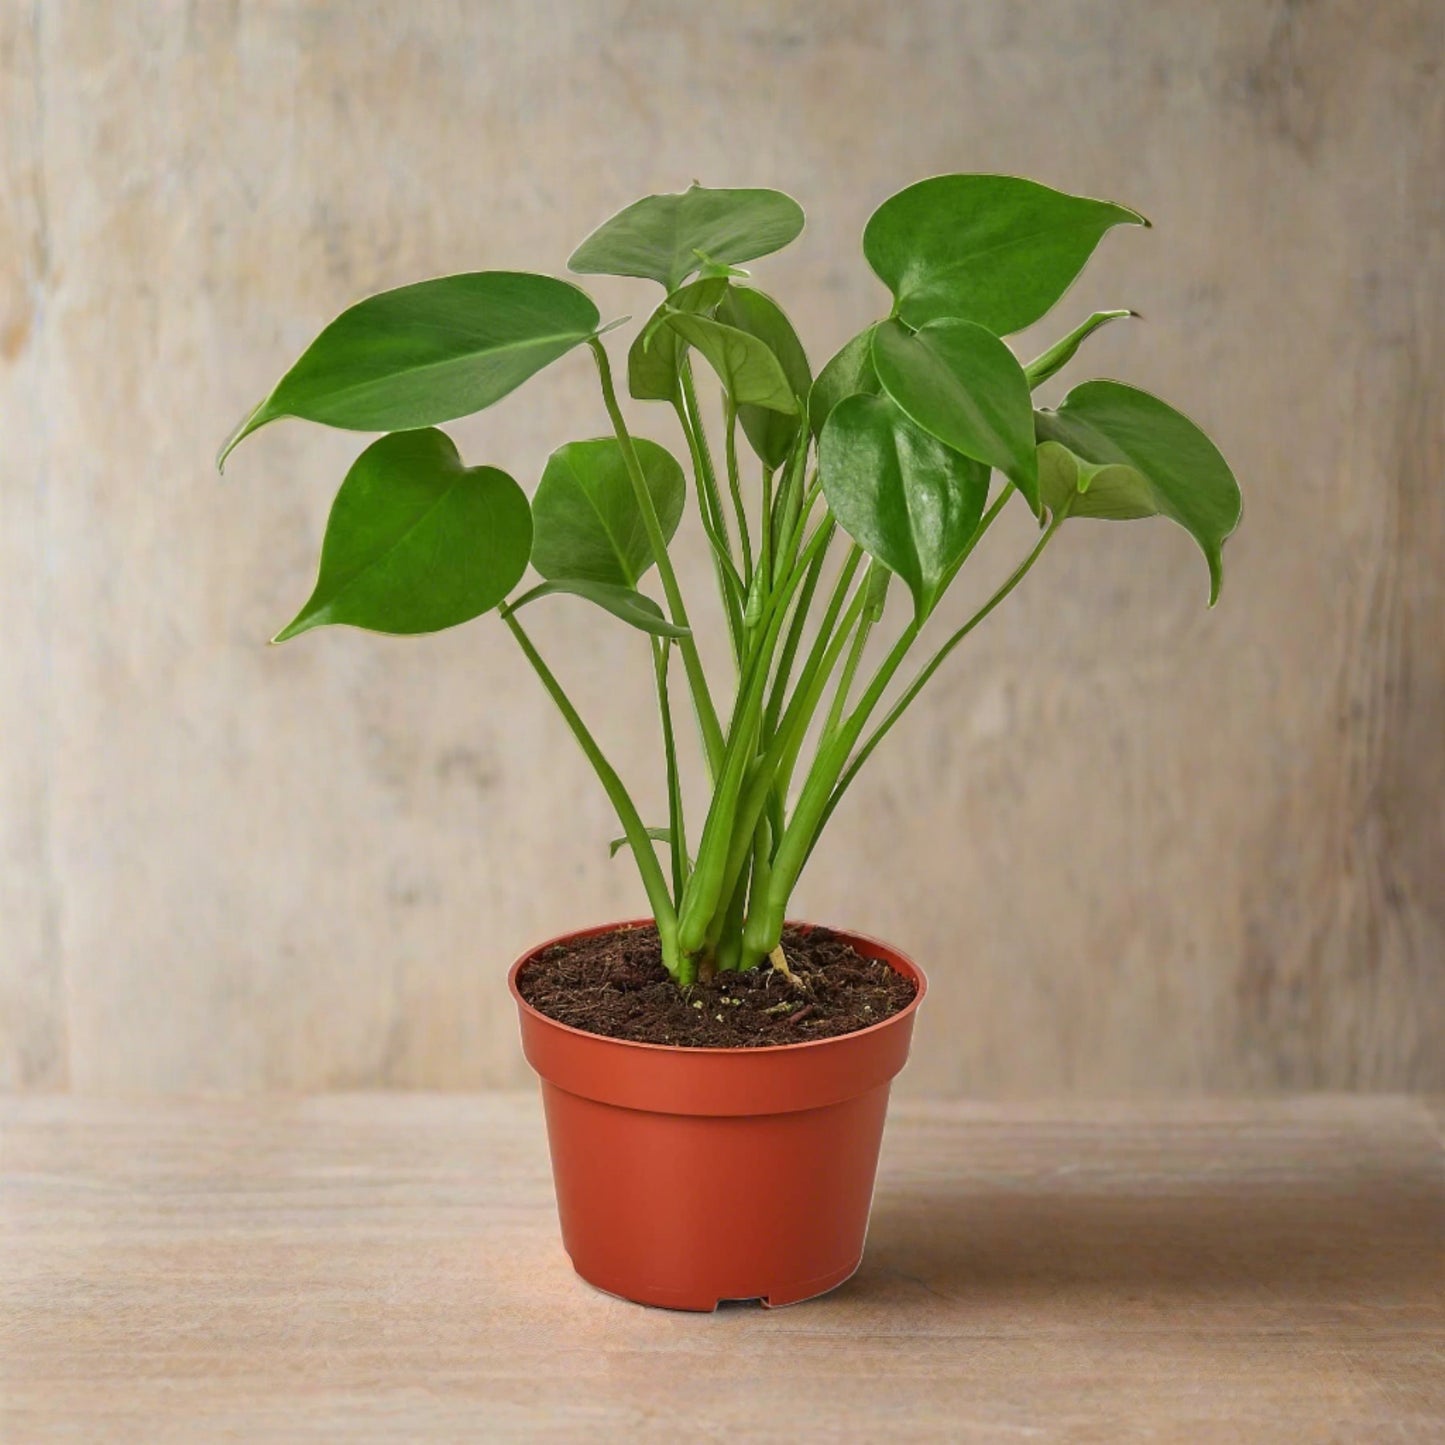 New Plant Parent Bundle - Plantonio